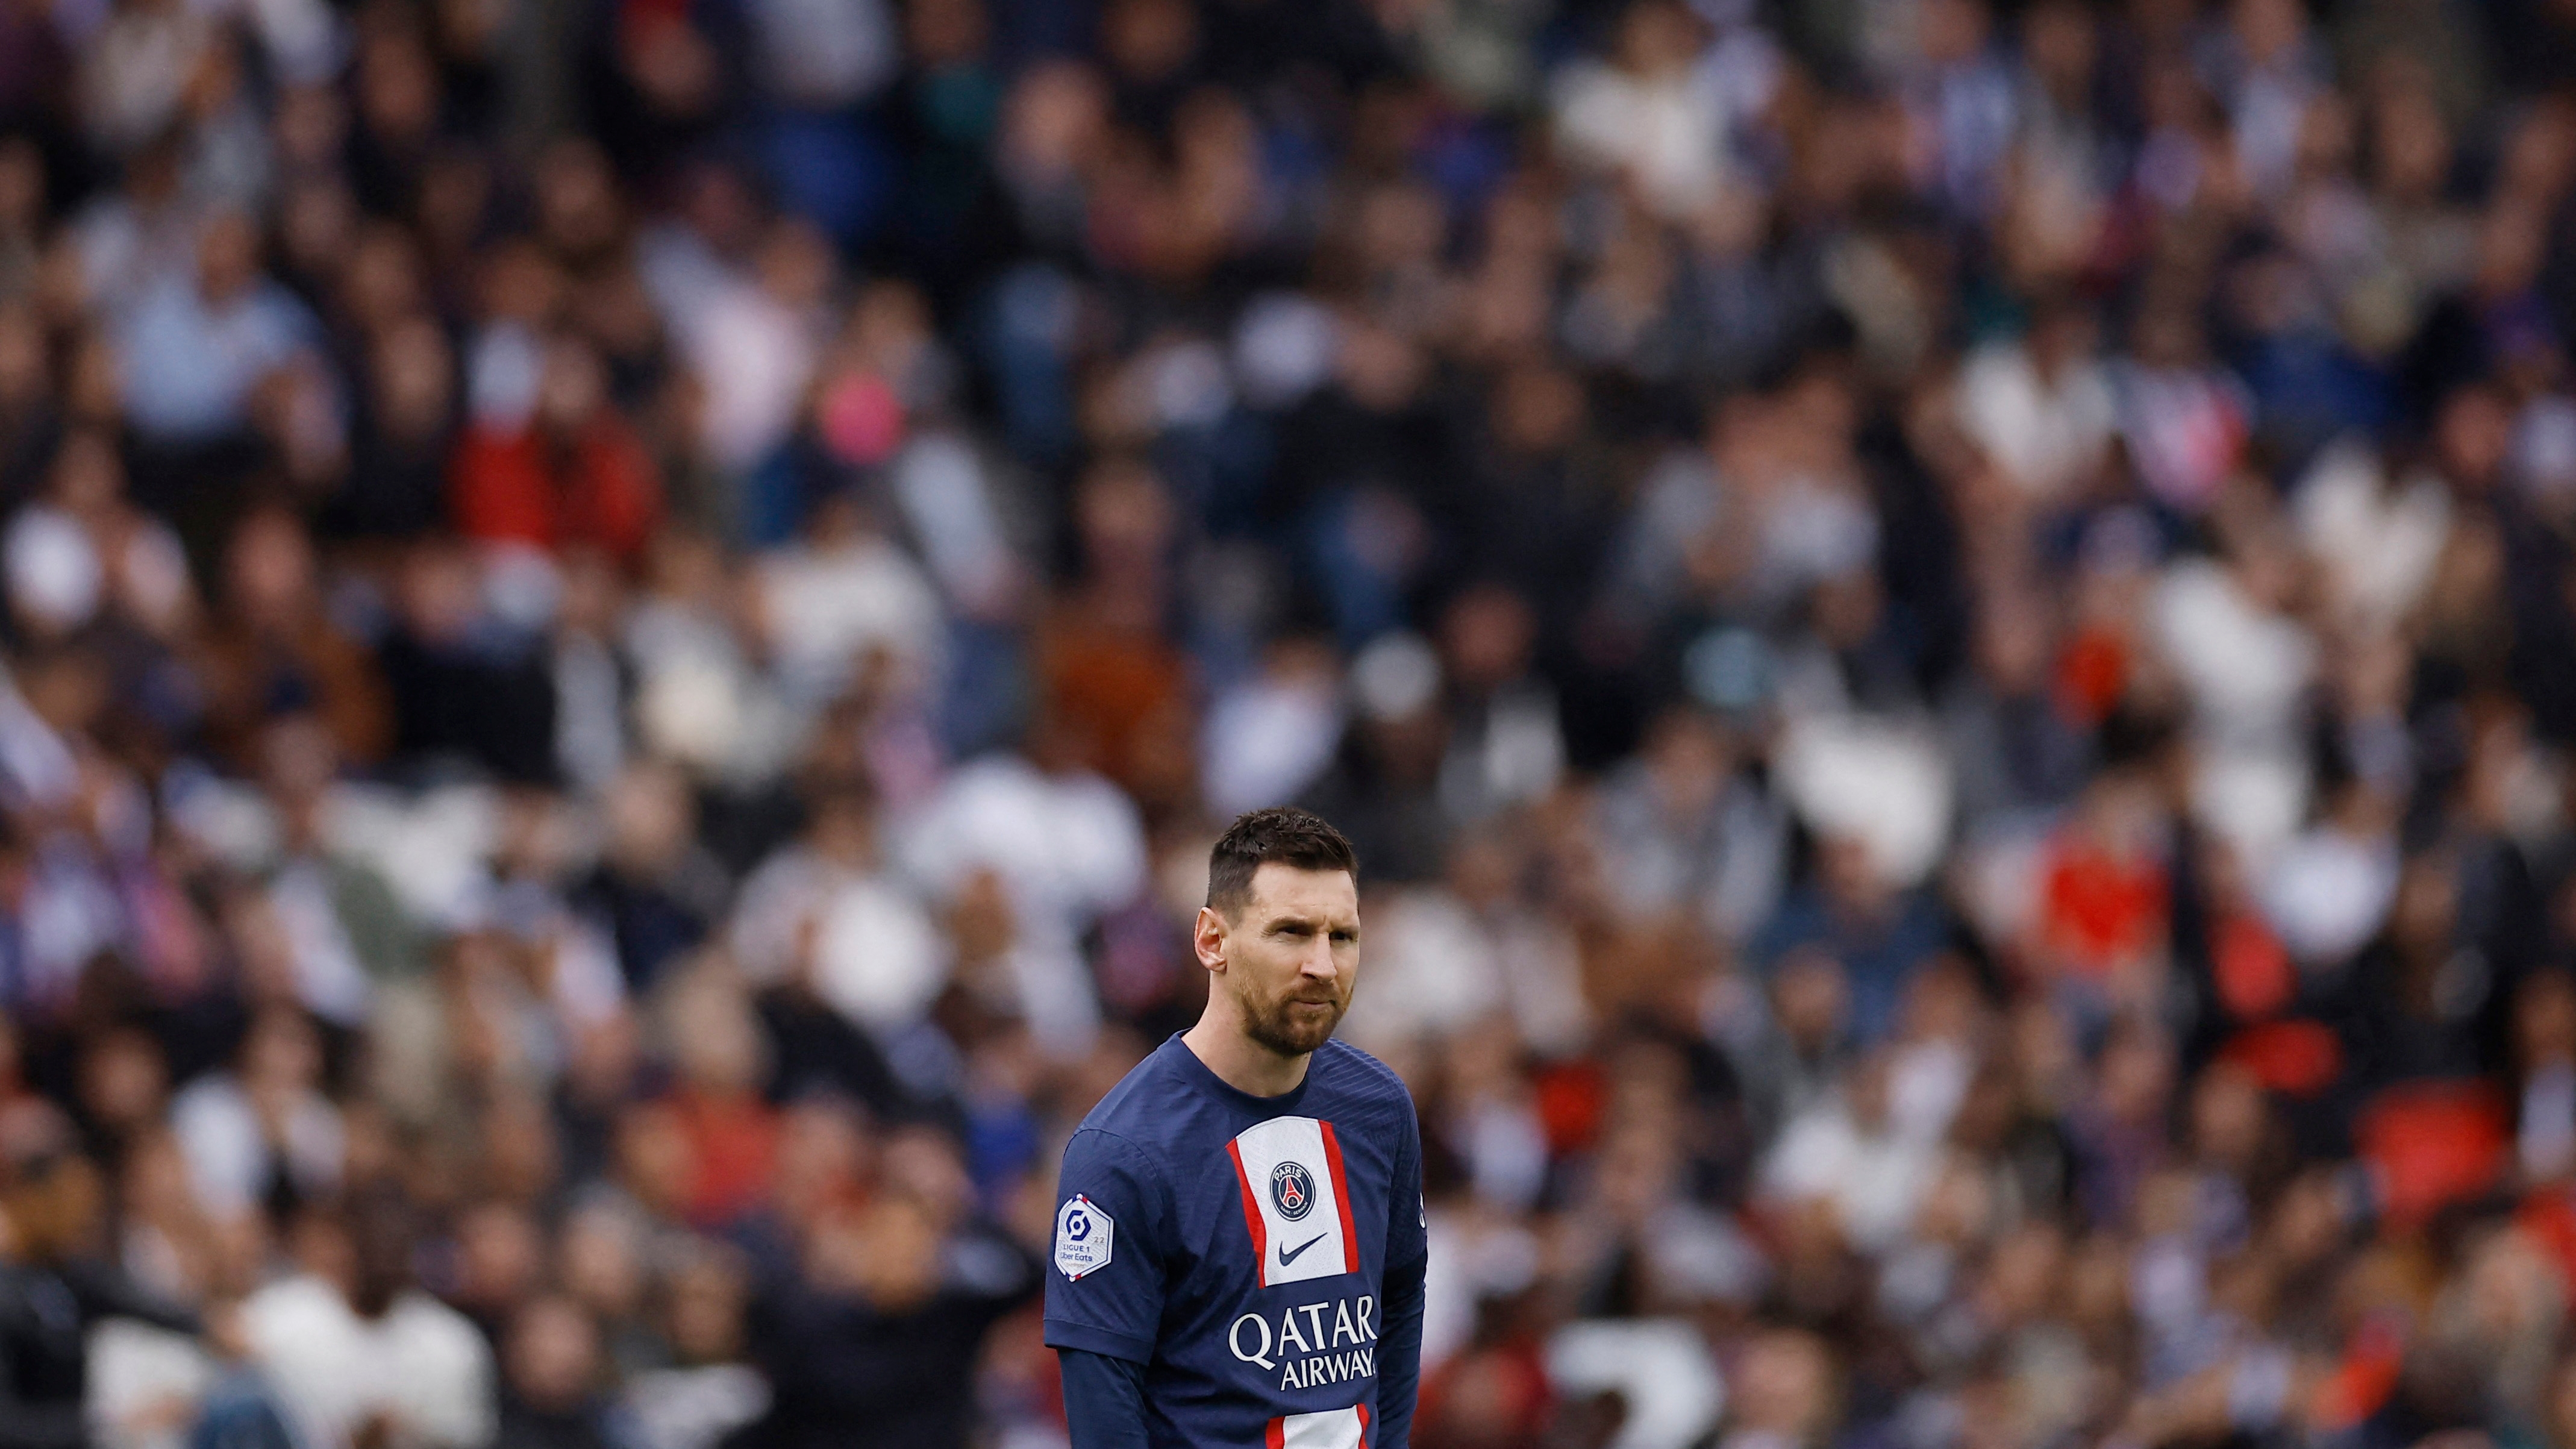 La prensa francesa volvió a calificar con un 3 a Messi en la derrota del PSG y lo criticó duramente: “Mbappé debe sentirse muy solo”